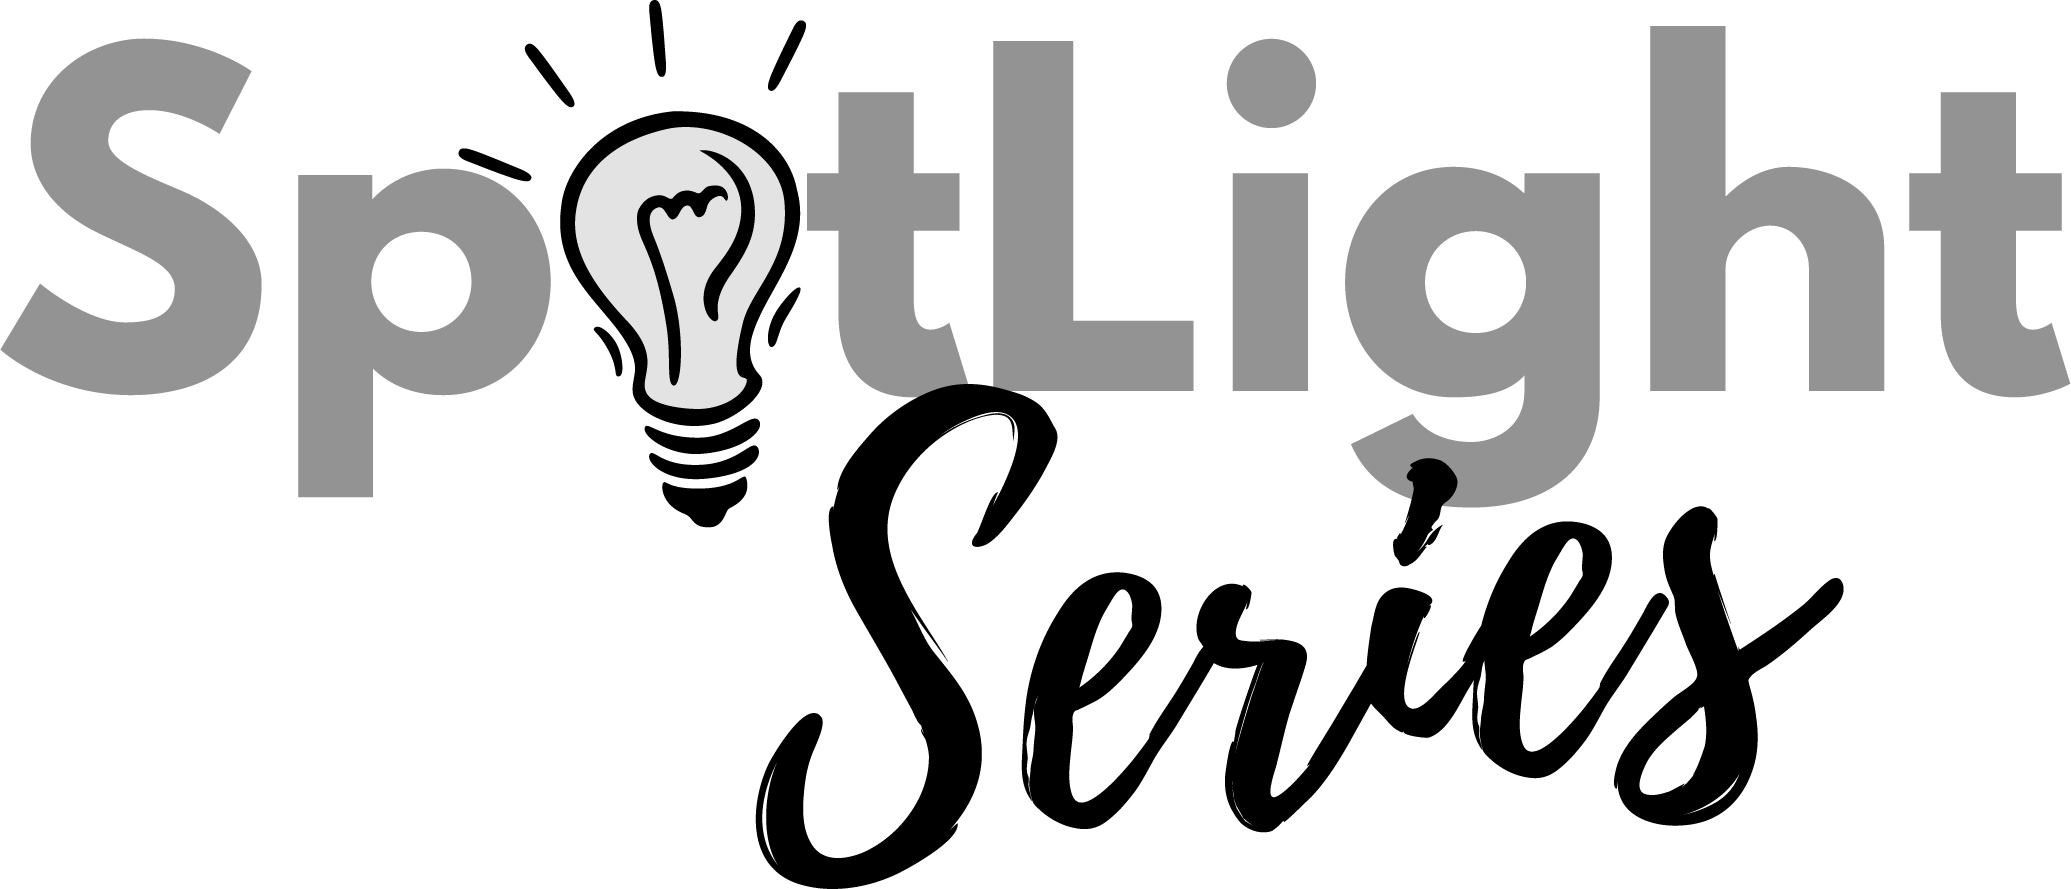 SpotLight logo